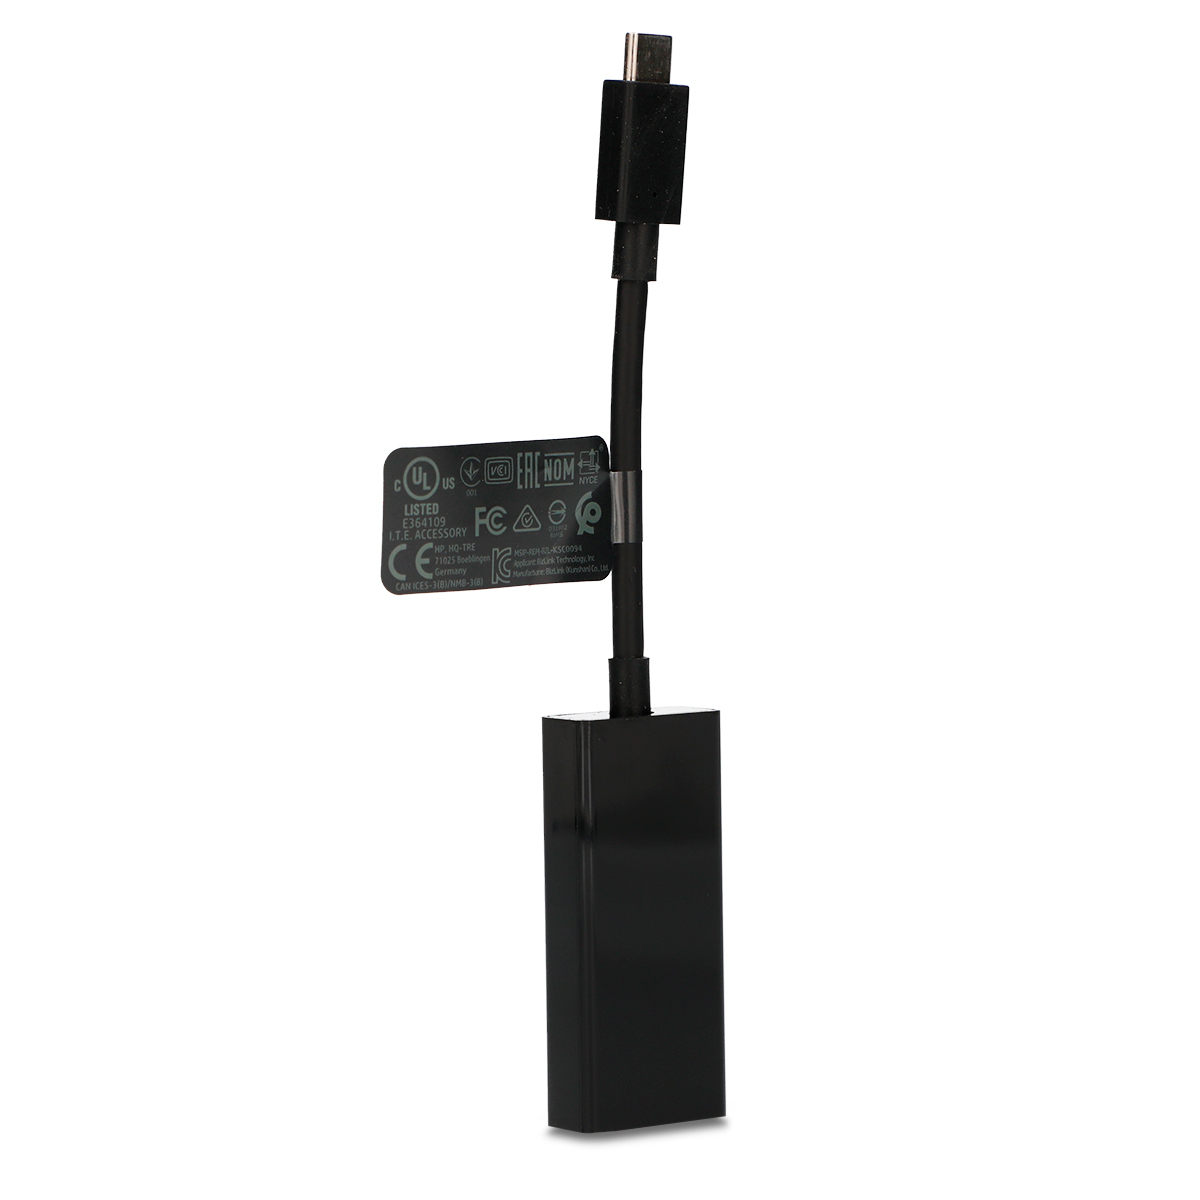 Adaptador USB C-HDMI HP